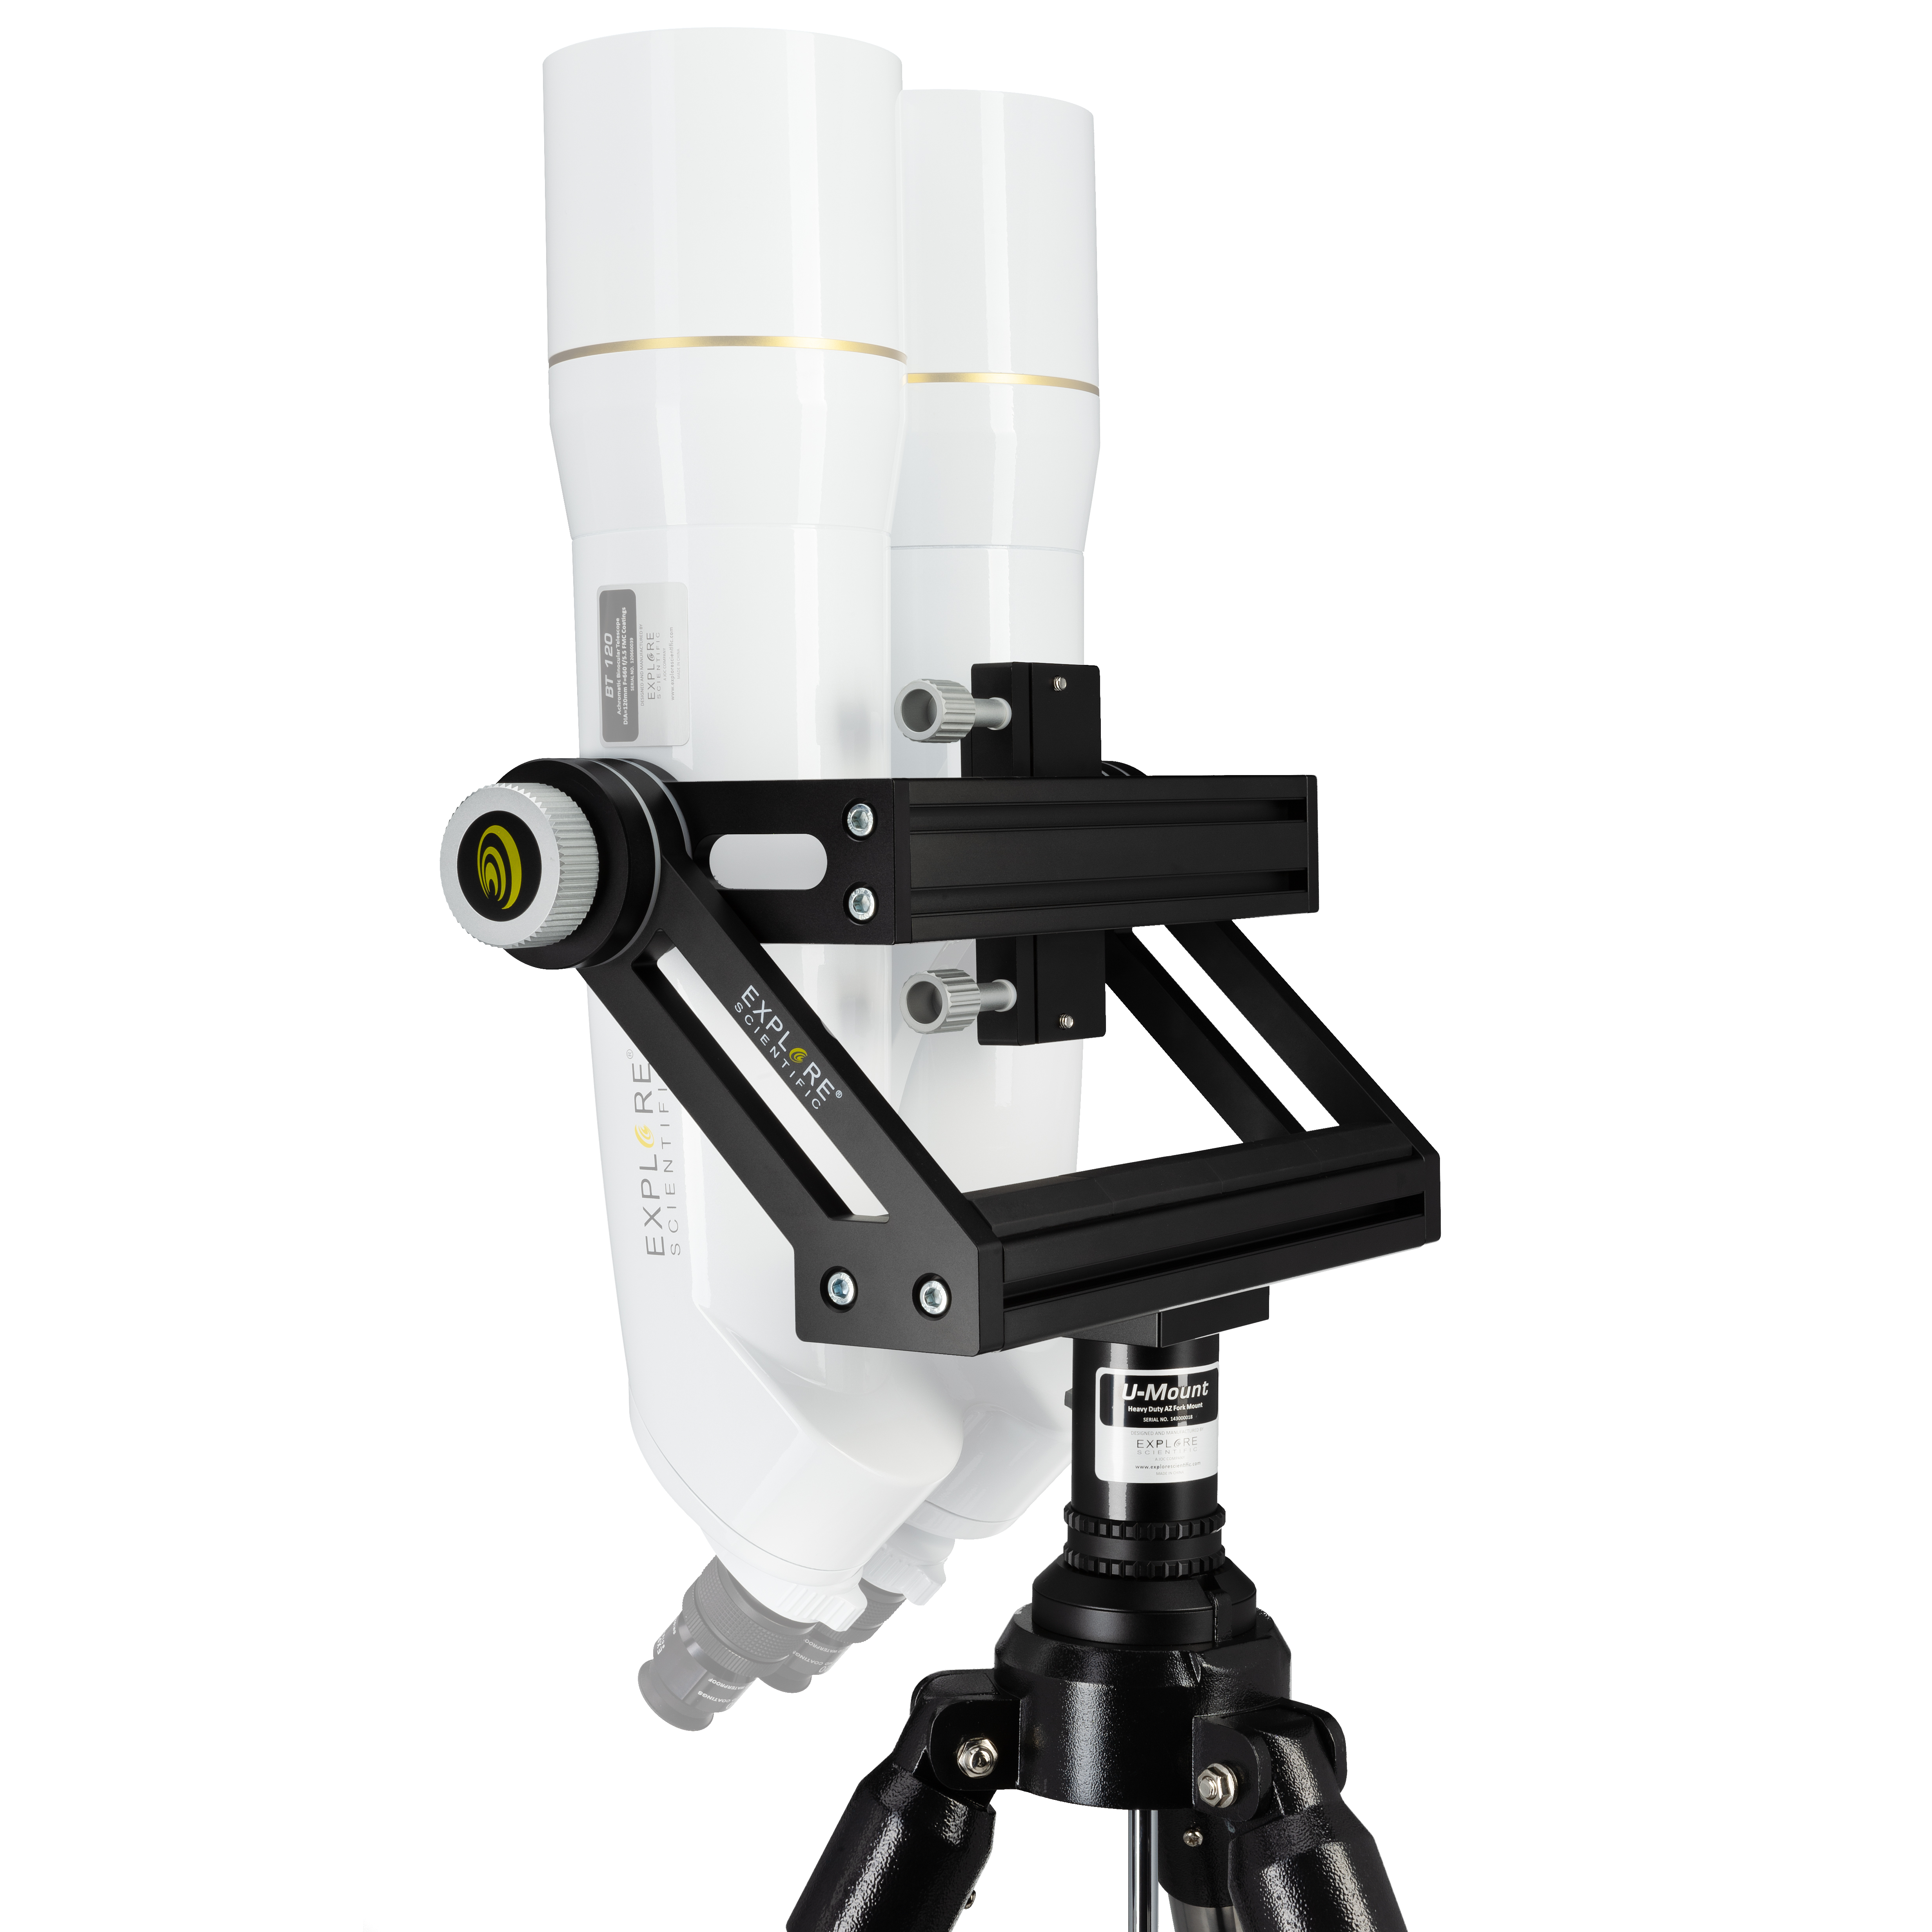 EXPLORE SCIENTIFIC Monture U avec trépied pour télescopes binoculaires